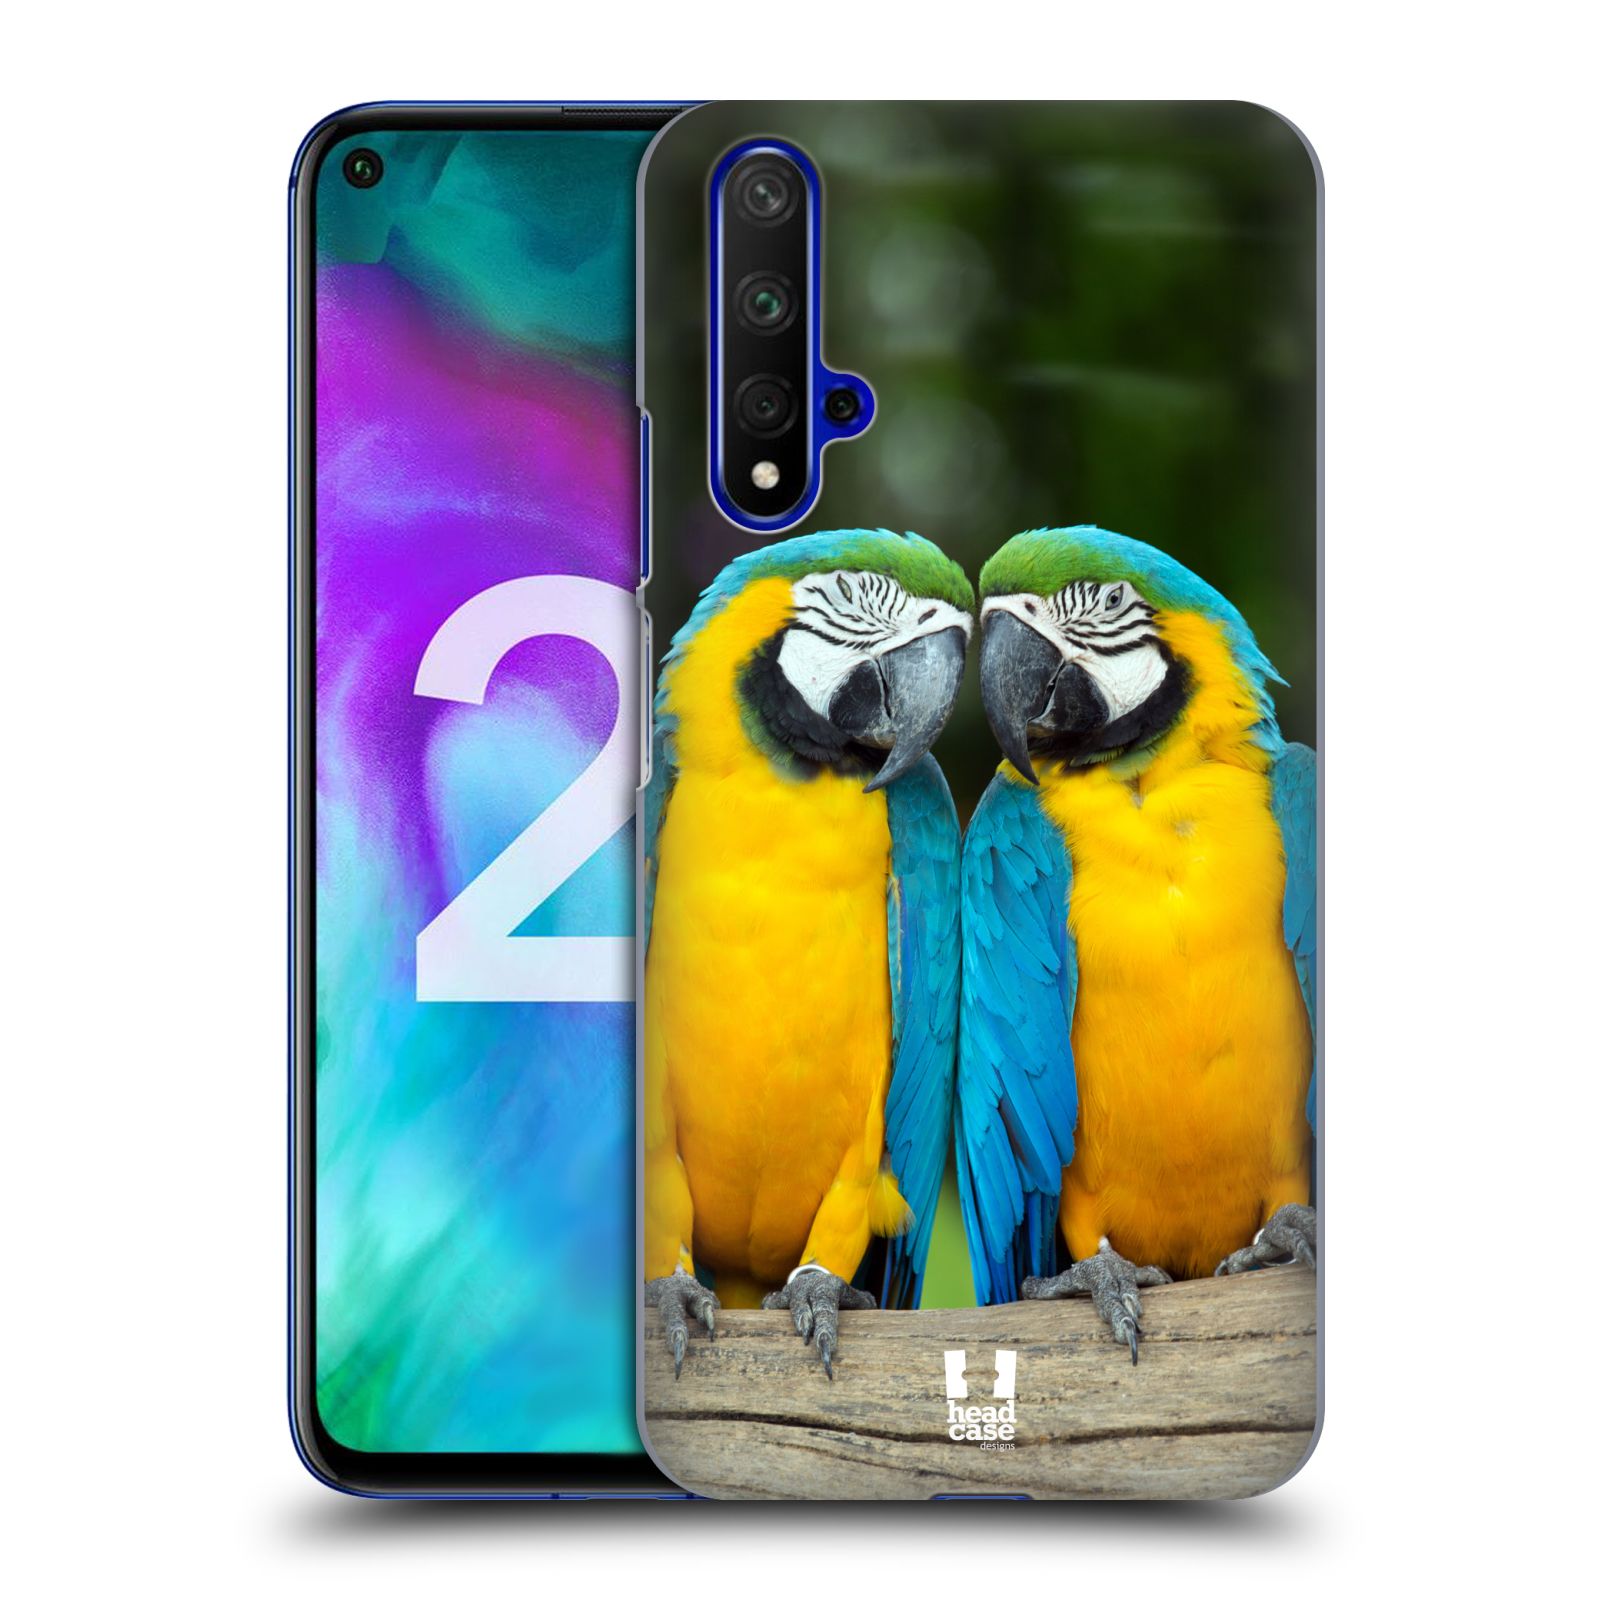 Pouzdro na mobil Honor 20 - HEAD CASE - vzor slavná zvířata foto dva papoušci